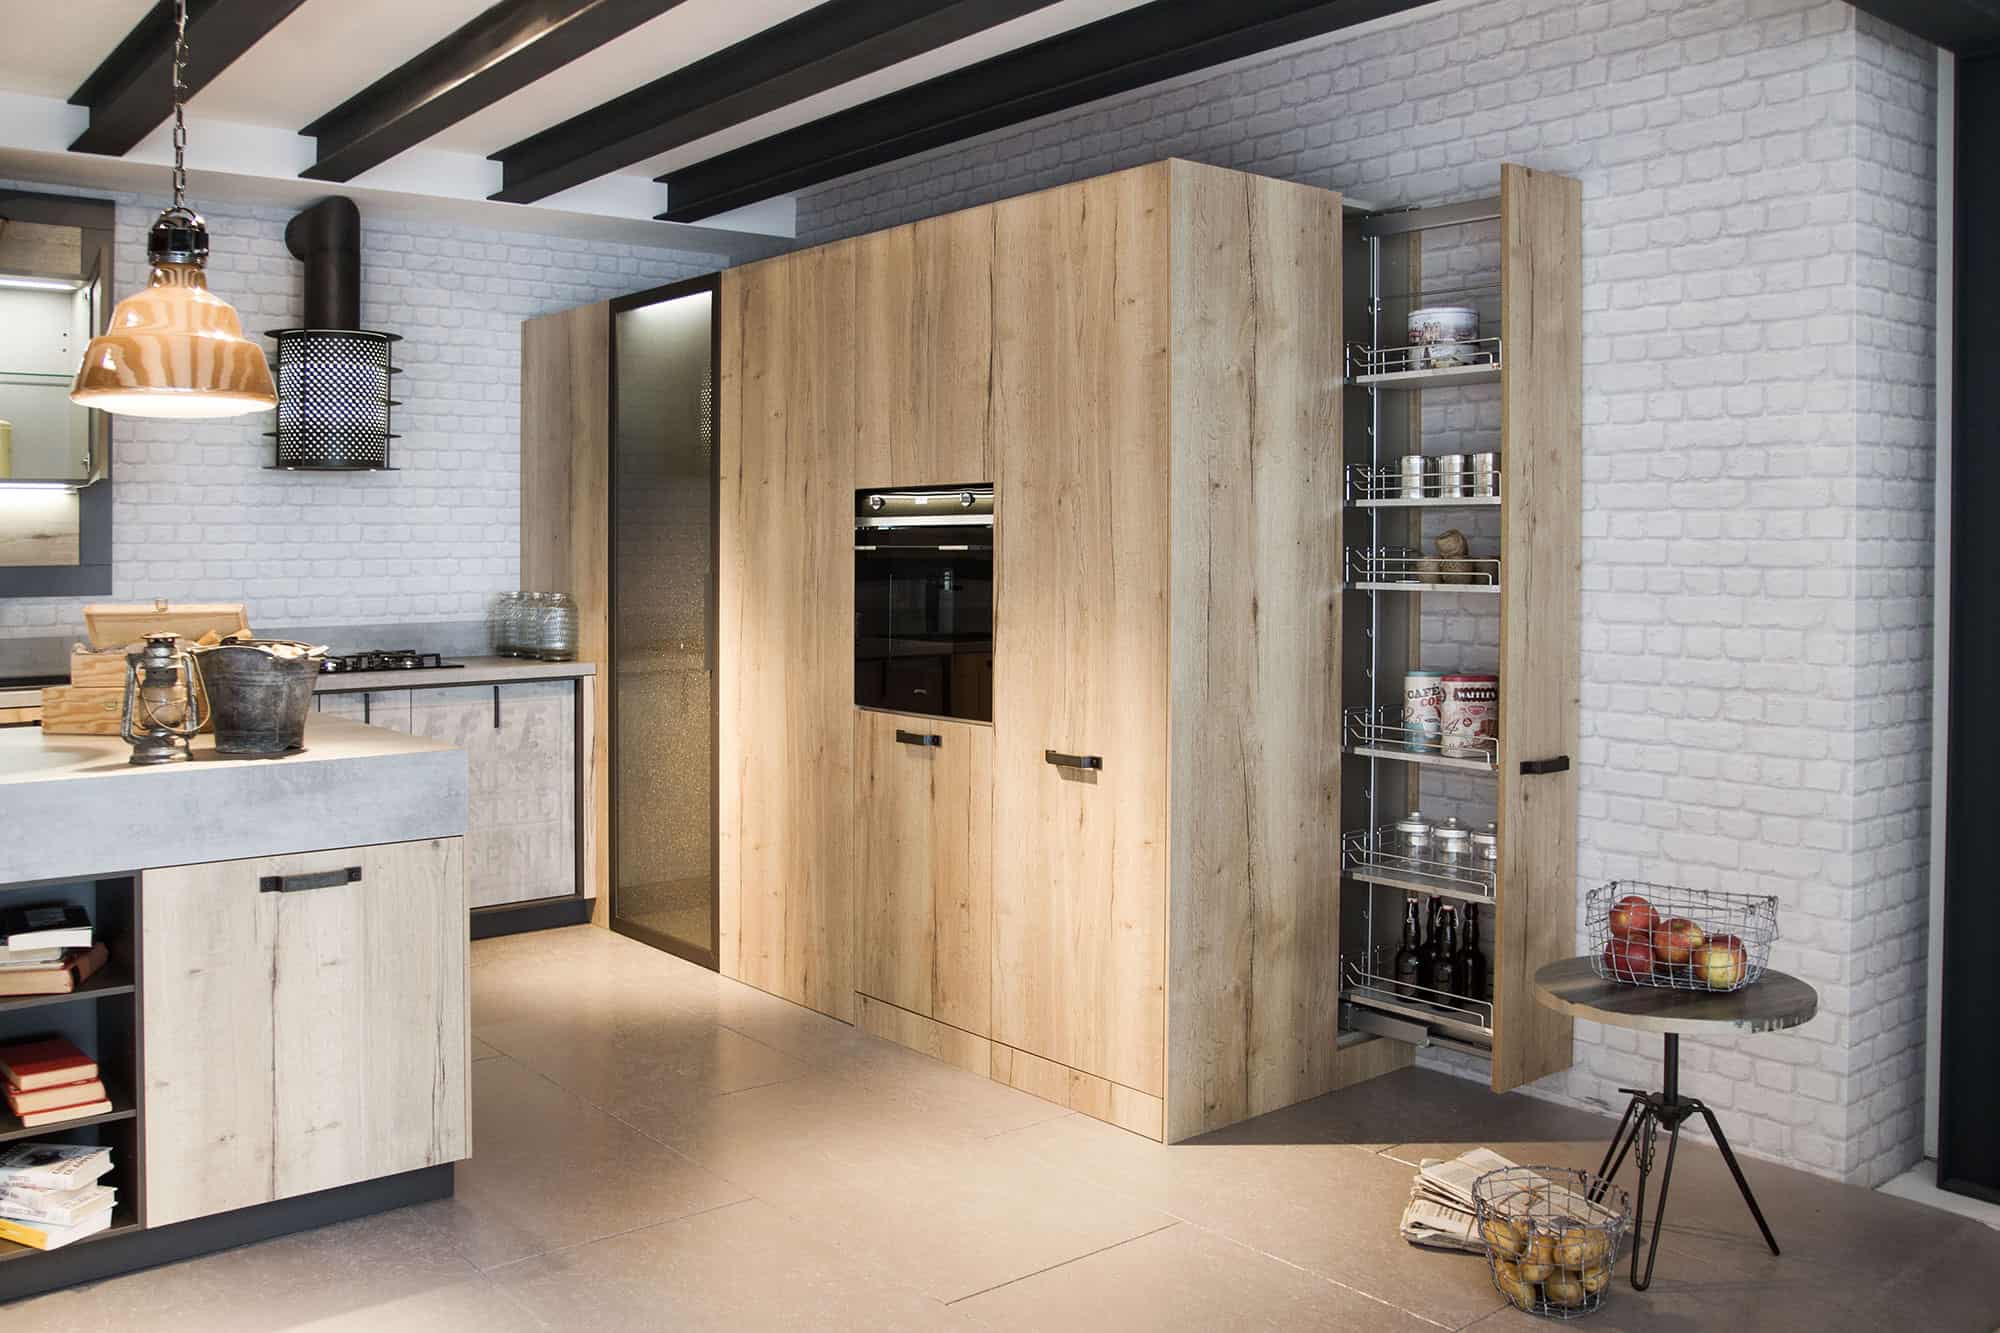 17 kitchen design lofts 3 urban ideas snaidero